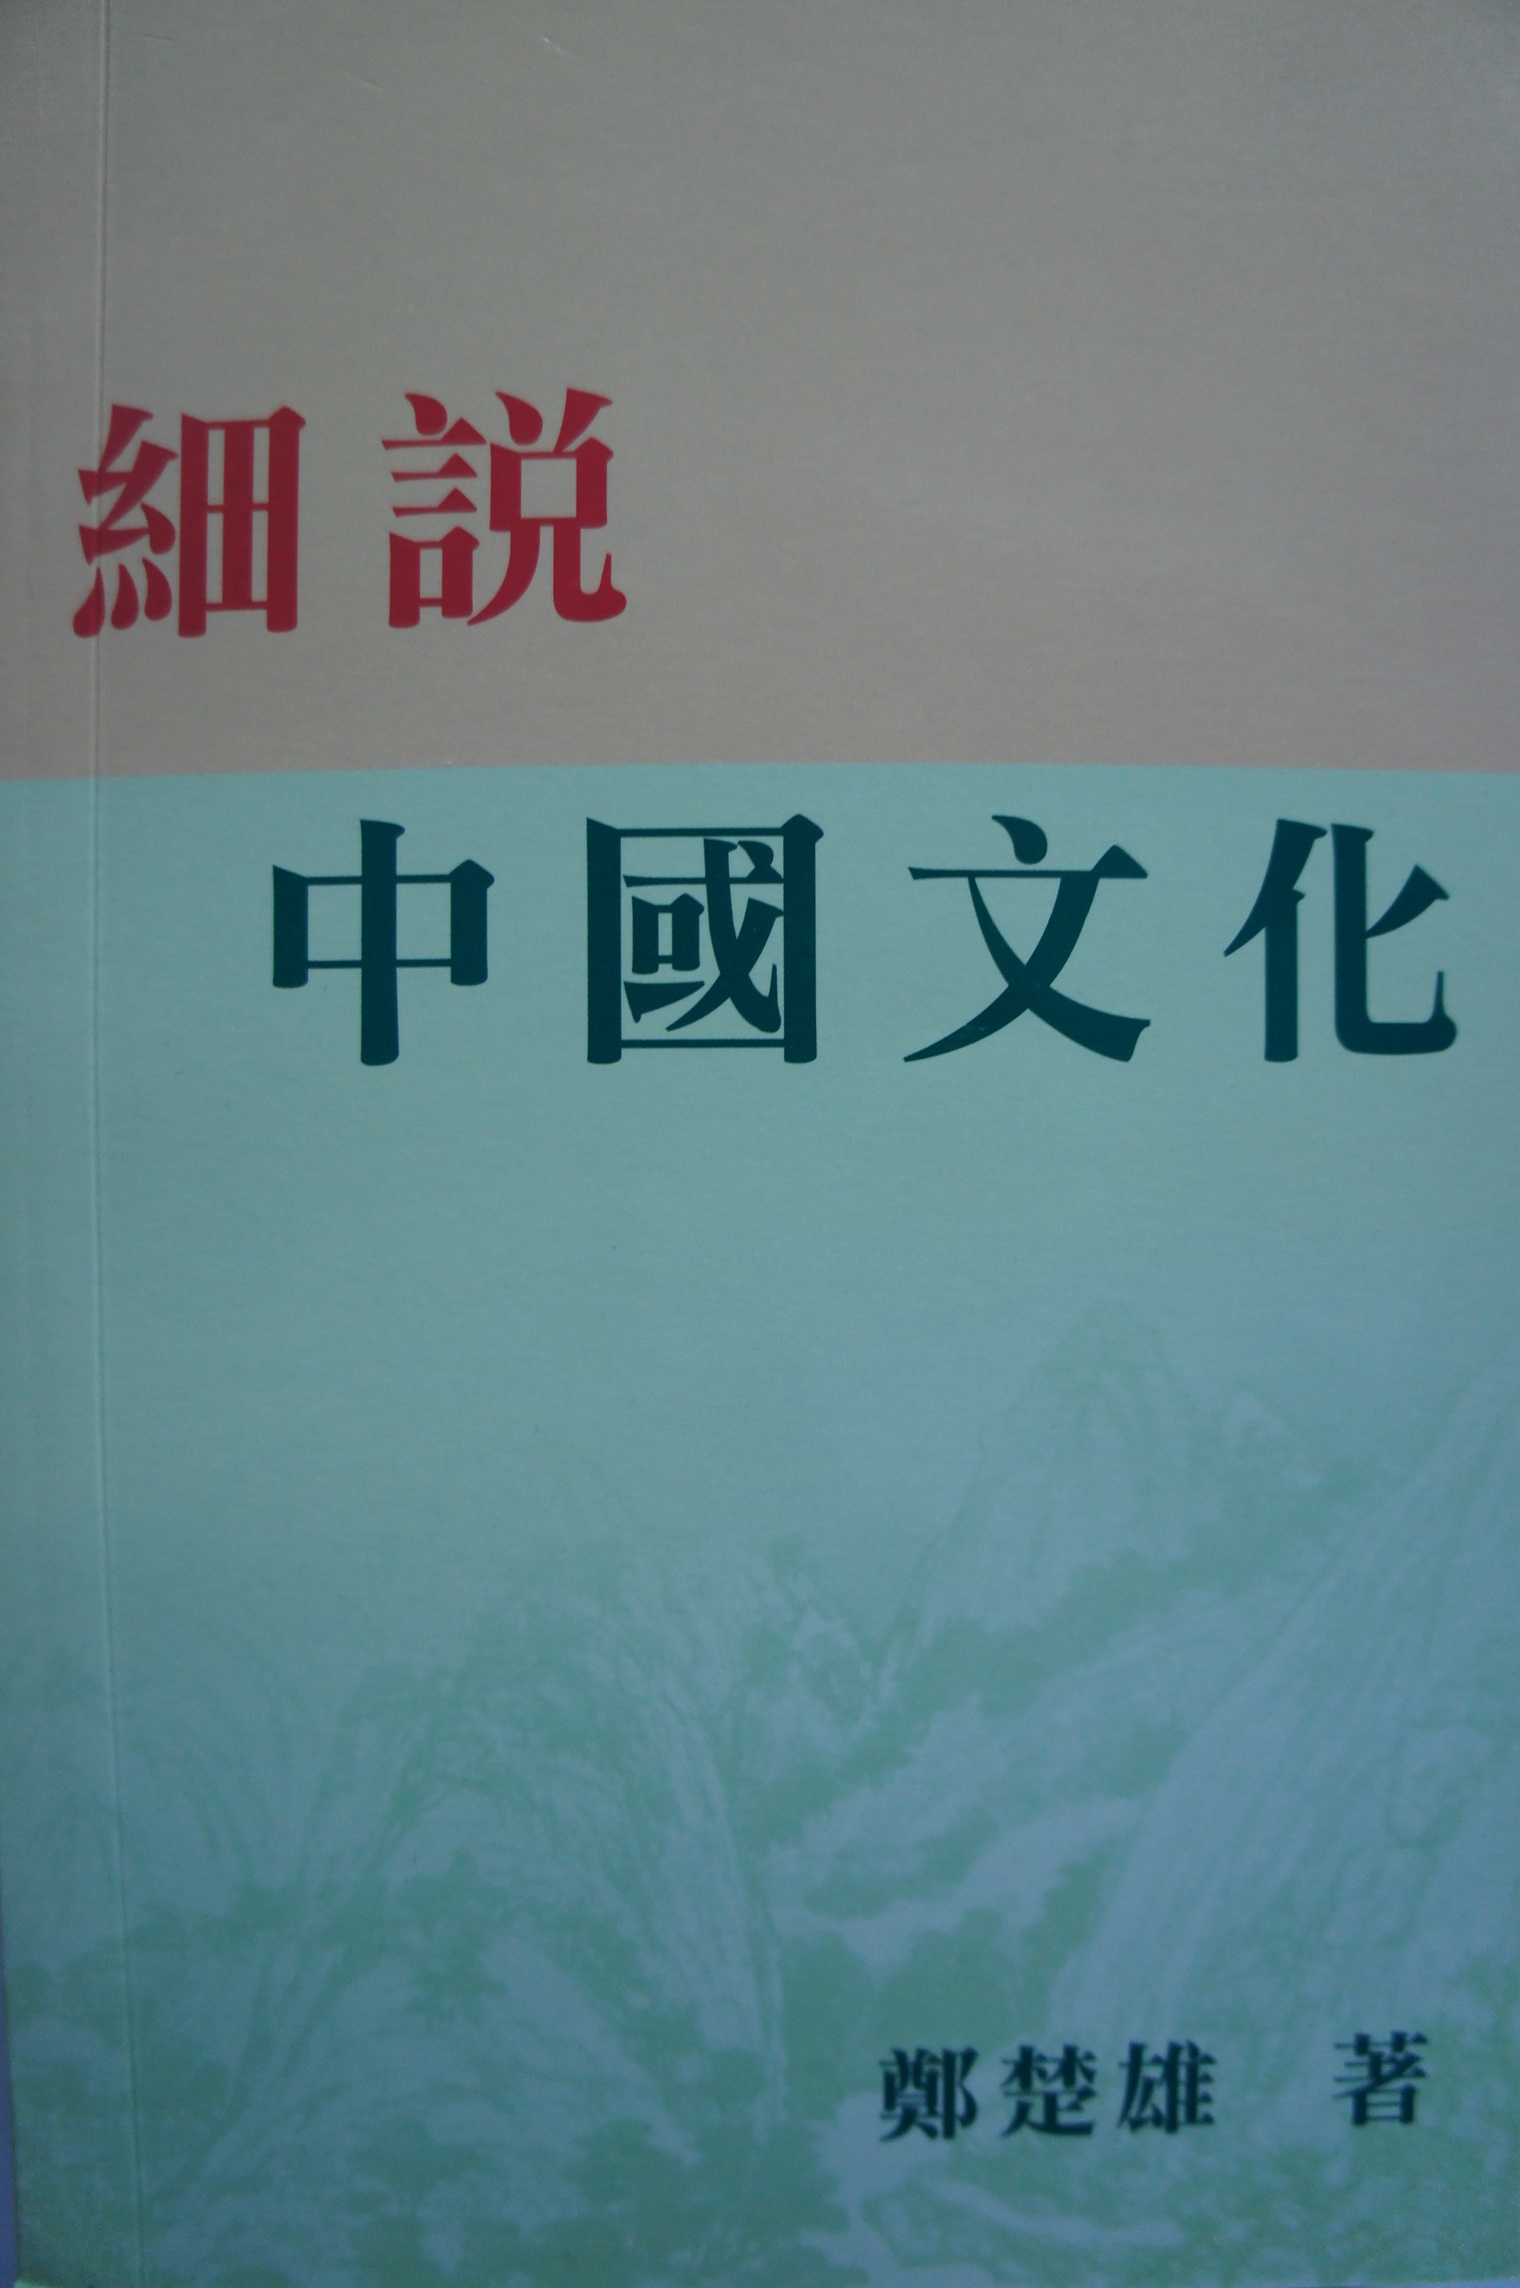 鄭楚雄 出版 書籍 《細說中國文化》